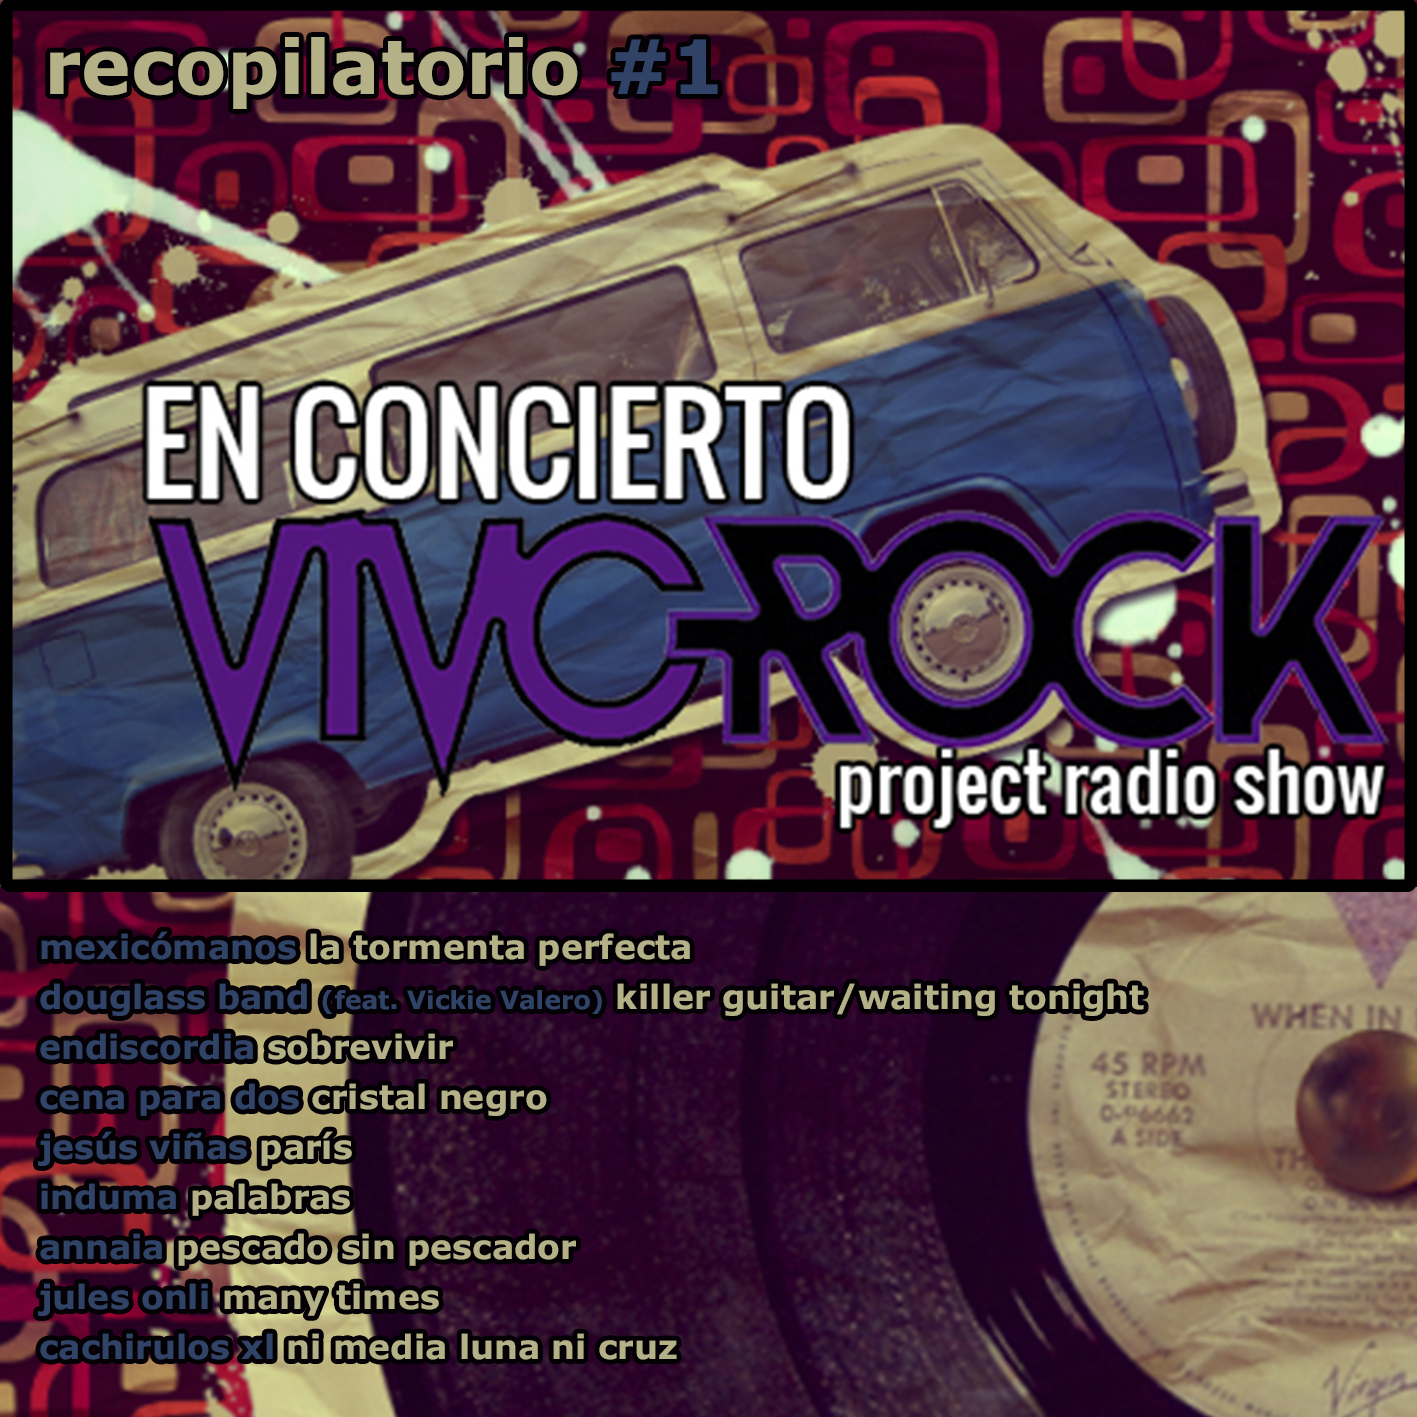 Vivo Rock En Concierto -Project Radio Show Álbum recopilatorio #1